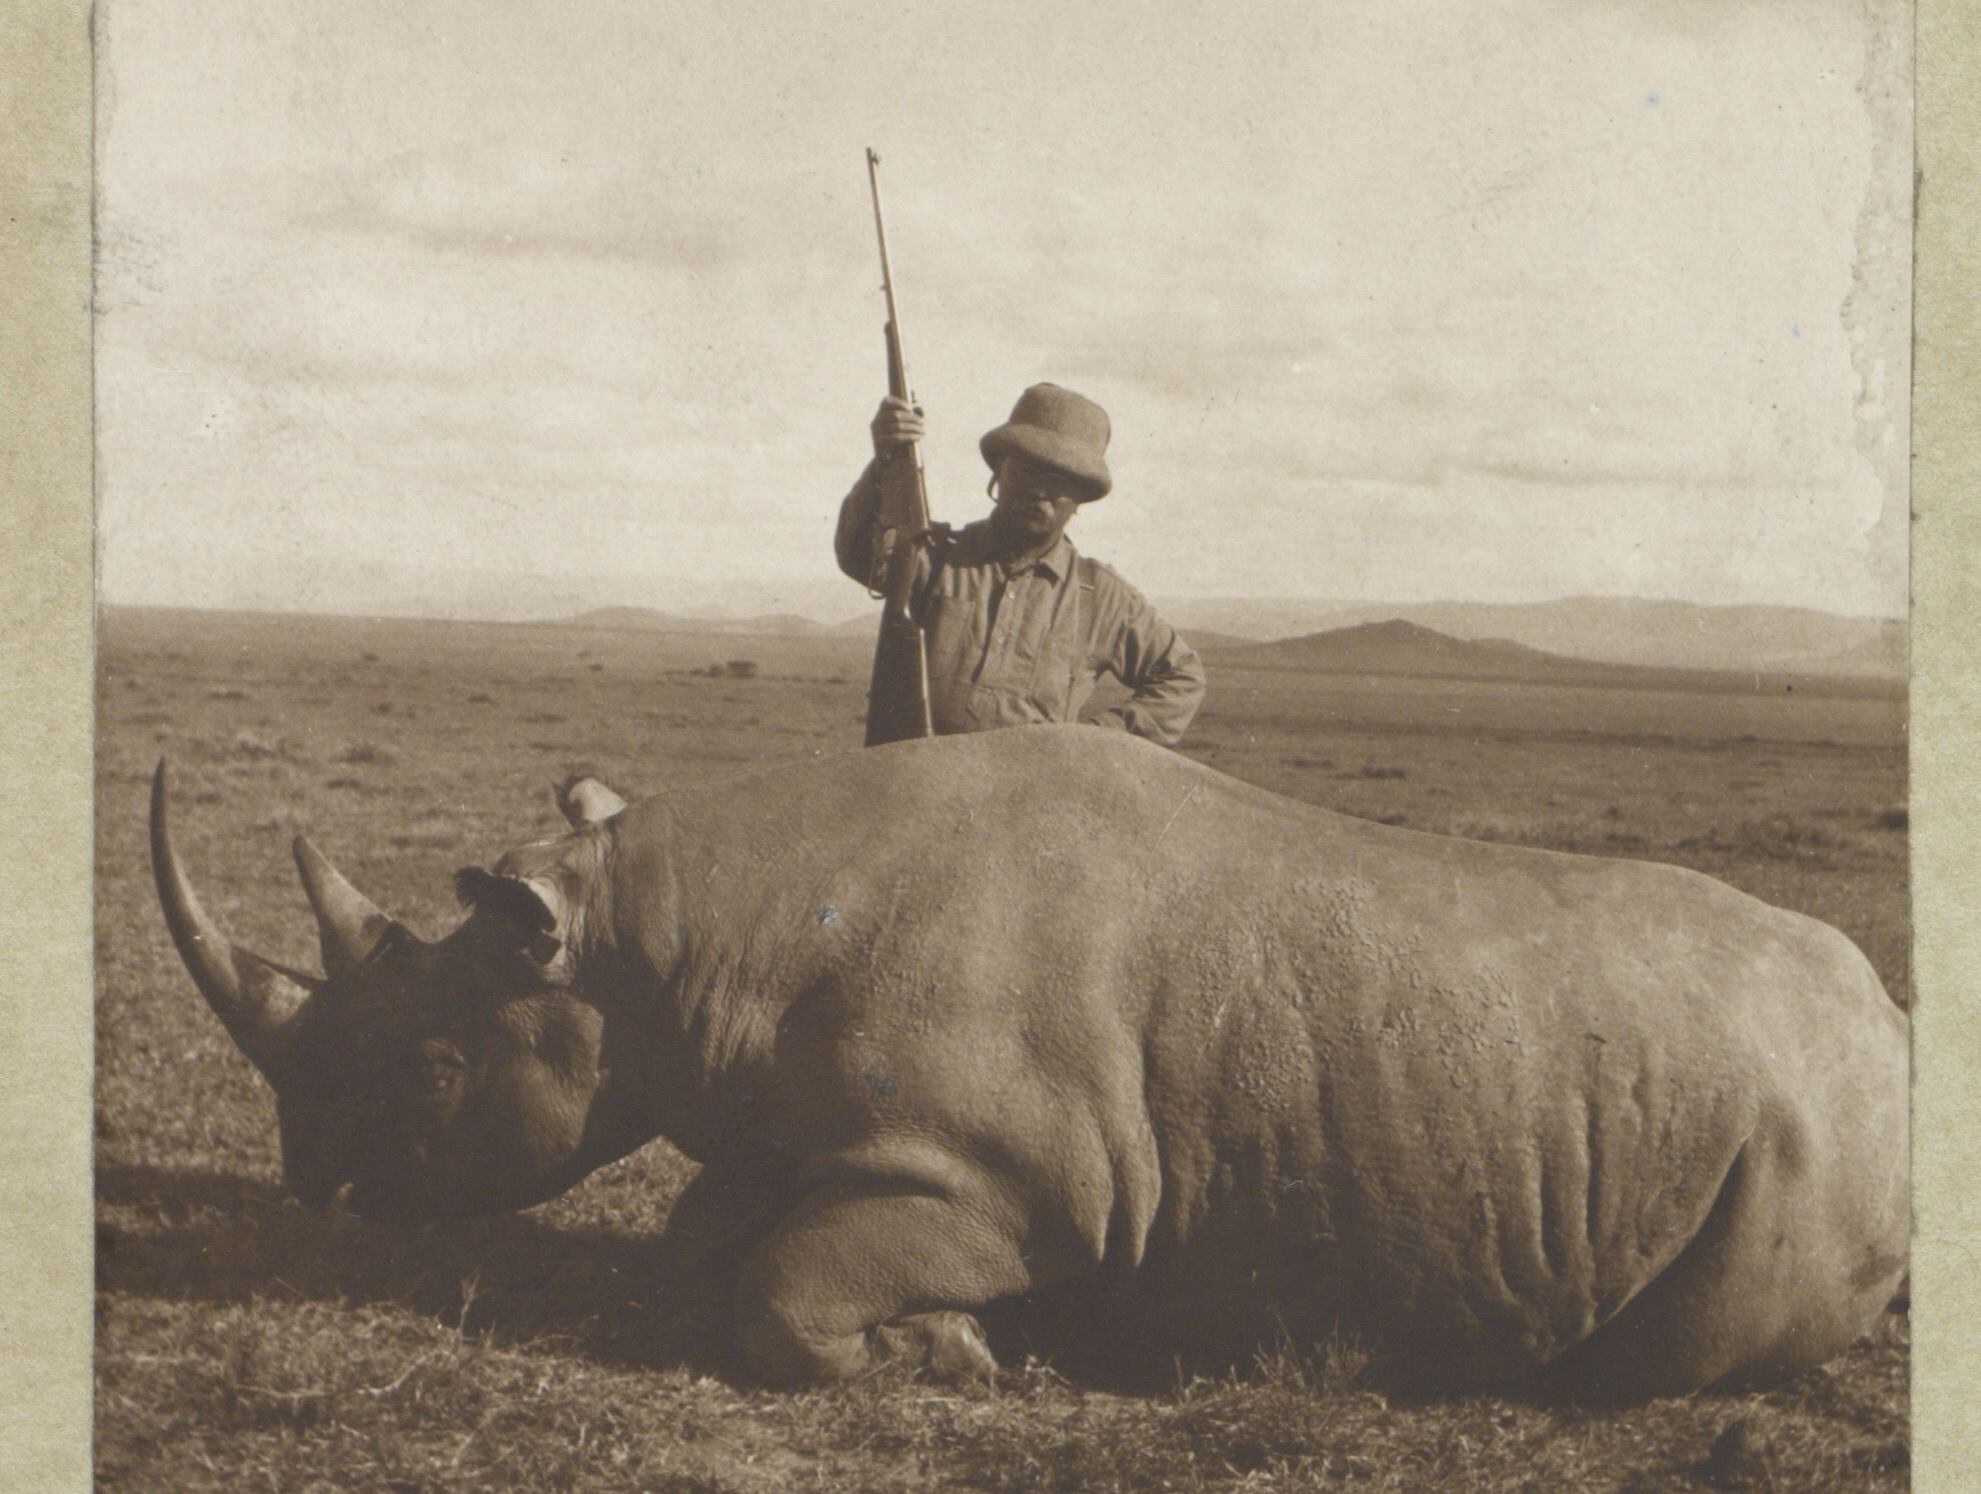 Poco después de dejar la presidencia de Estados Unidos, Theodore Roosevelt participó en un viaje a África para llenar de fondos el proyectado Museo de Historia Natural. En un año y solo de dos especies de rinocerontes, él y su hijo abatieron a 106 animales.